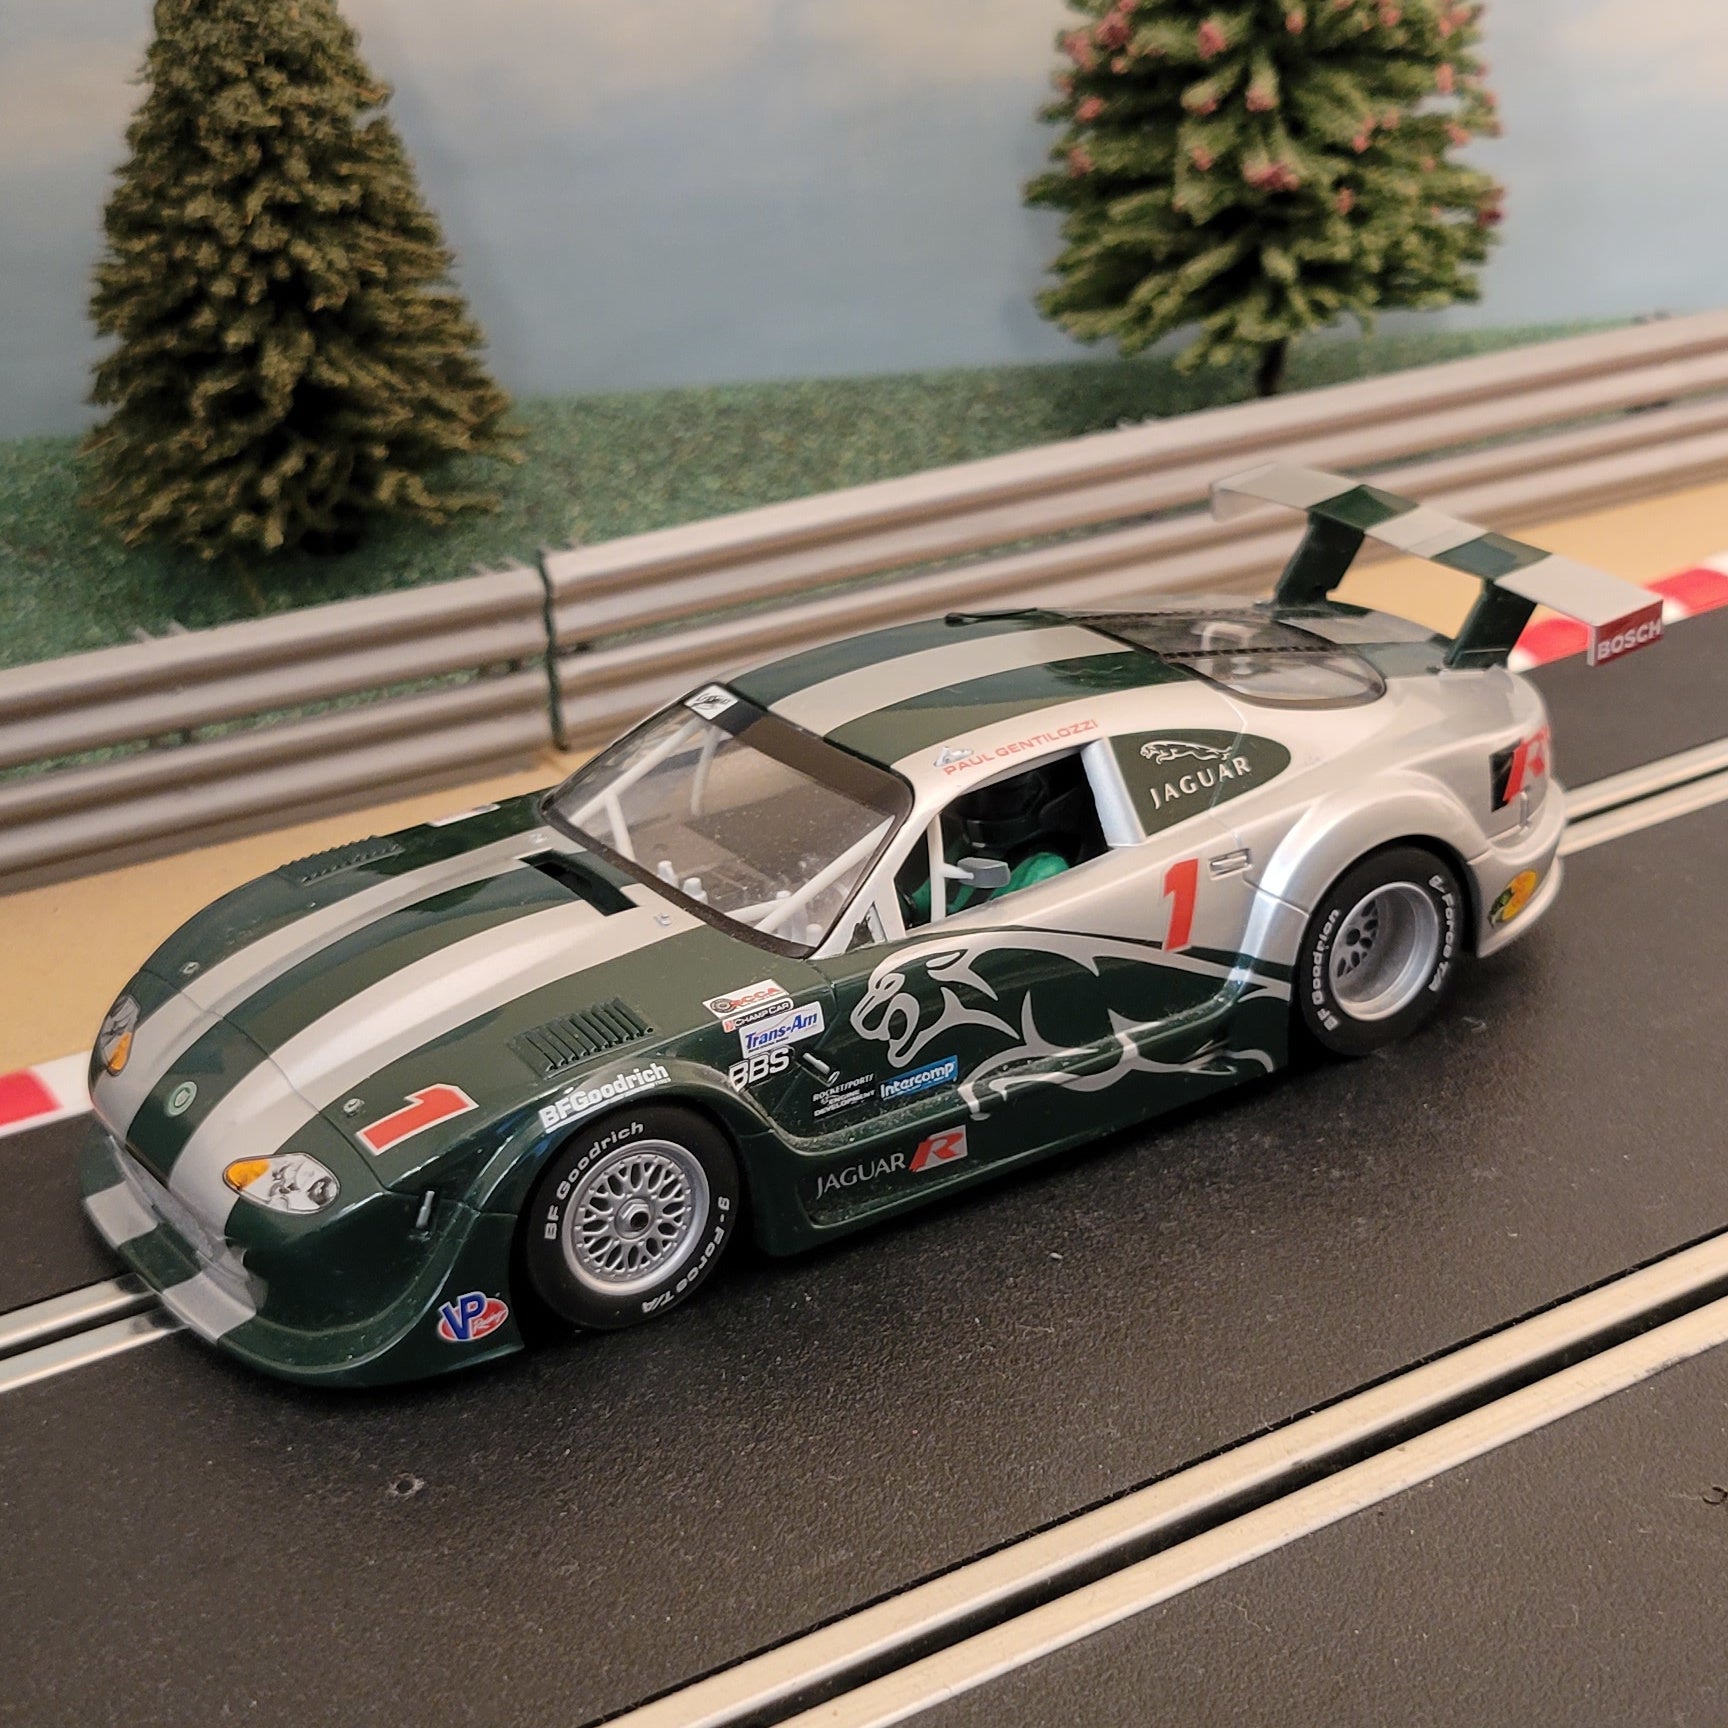 Scalextric 1:32 Car - C2711 Jaguar XKRS - Paul Gentilozzi #1 #J